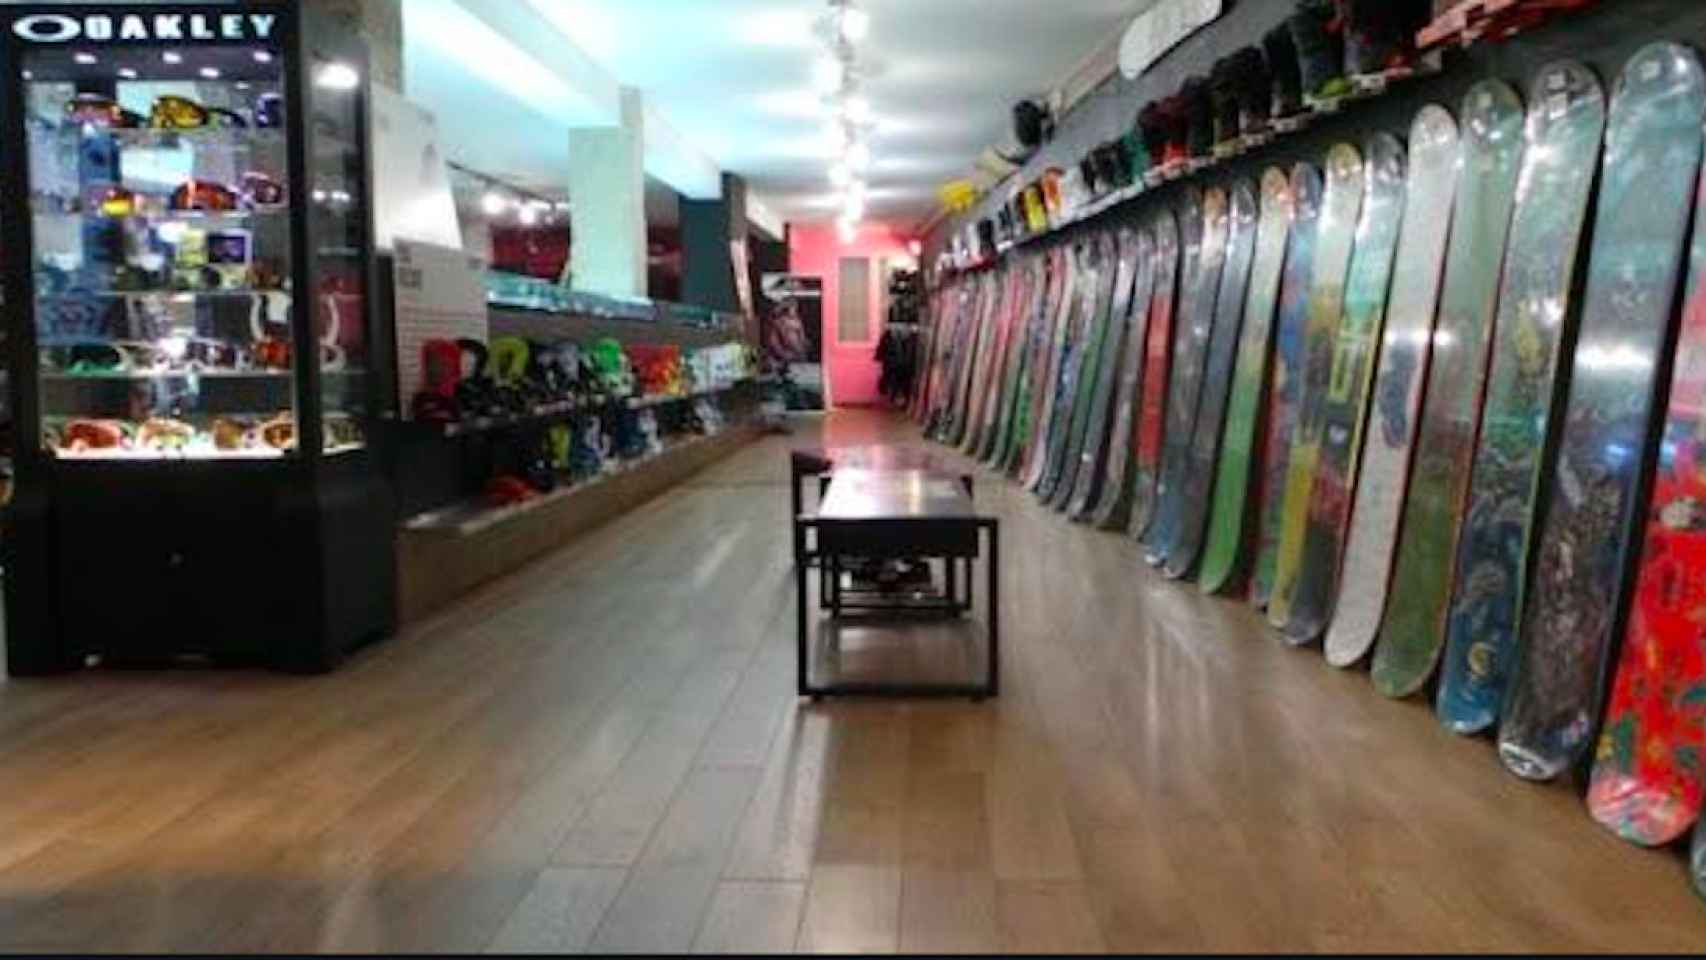 Interior de la General Surfera, una de las tiendas de skate más conocidas de Barcelona / calle.es